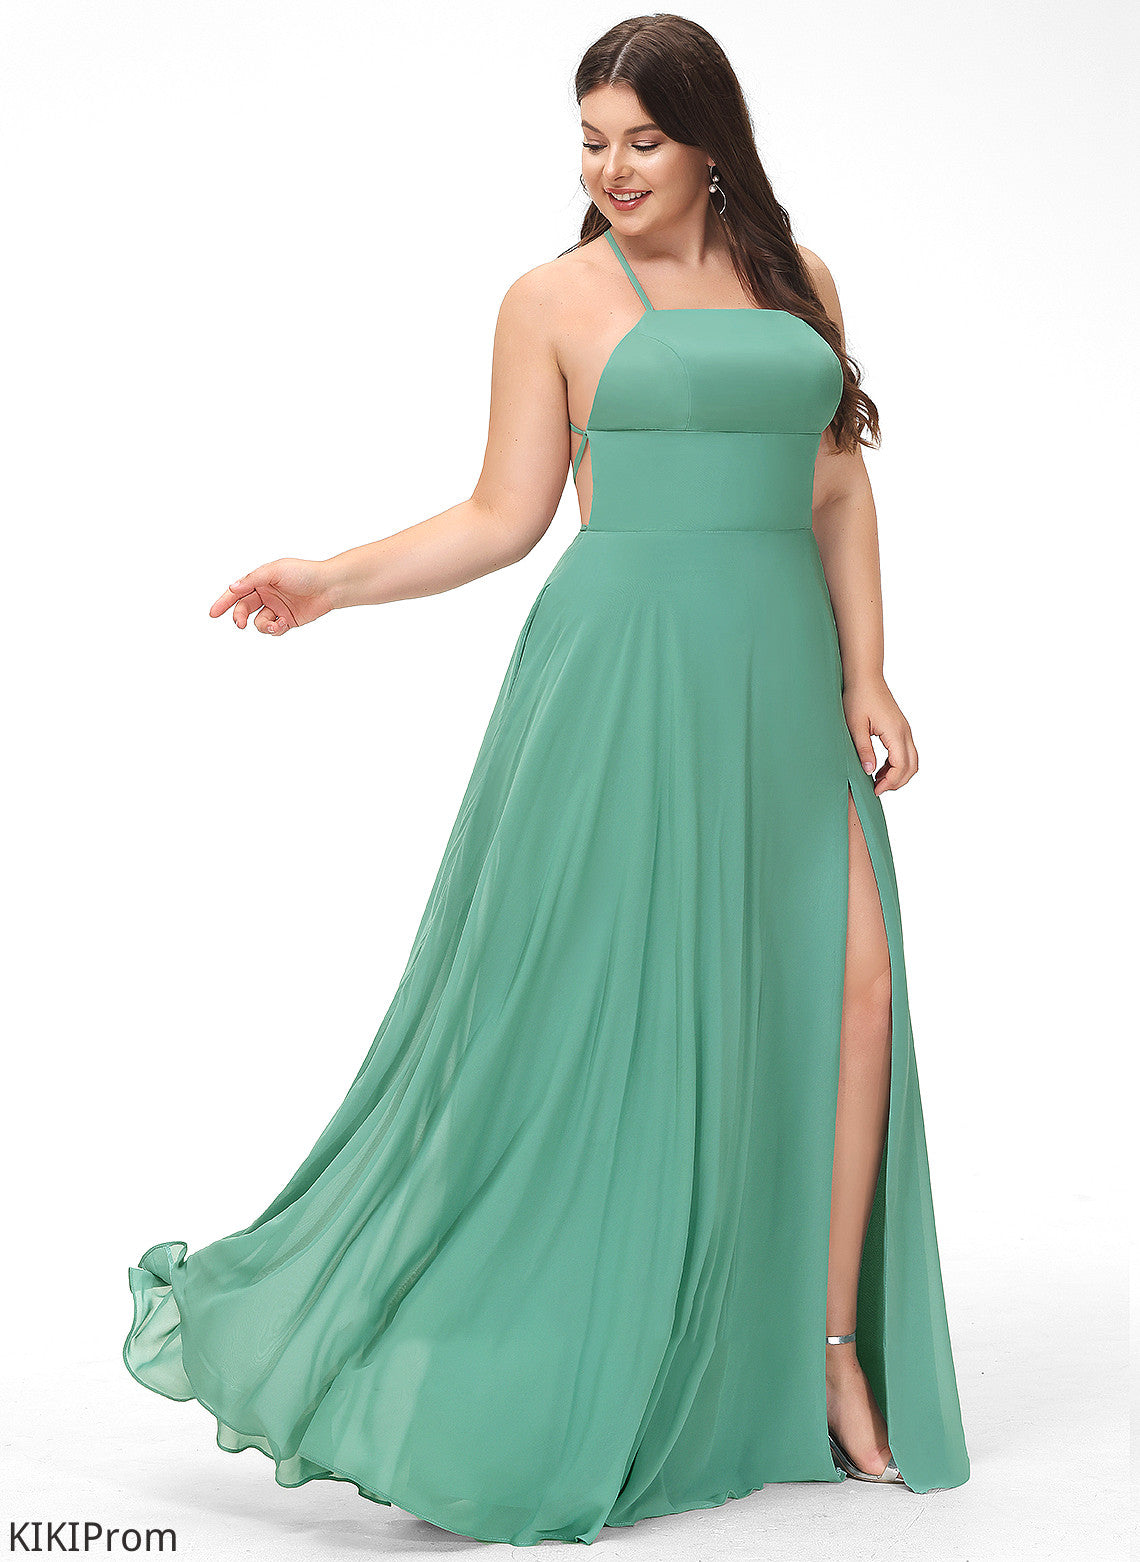 Floor-Length A-Line Neckline Silhouette SquareNeckline Fabric Straps Length Lilah Bridesmaid Dresses